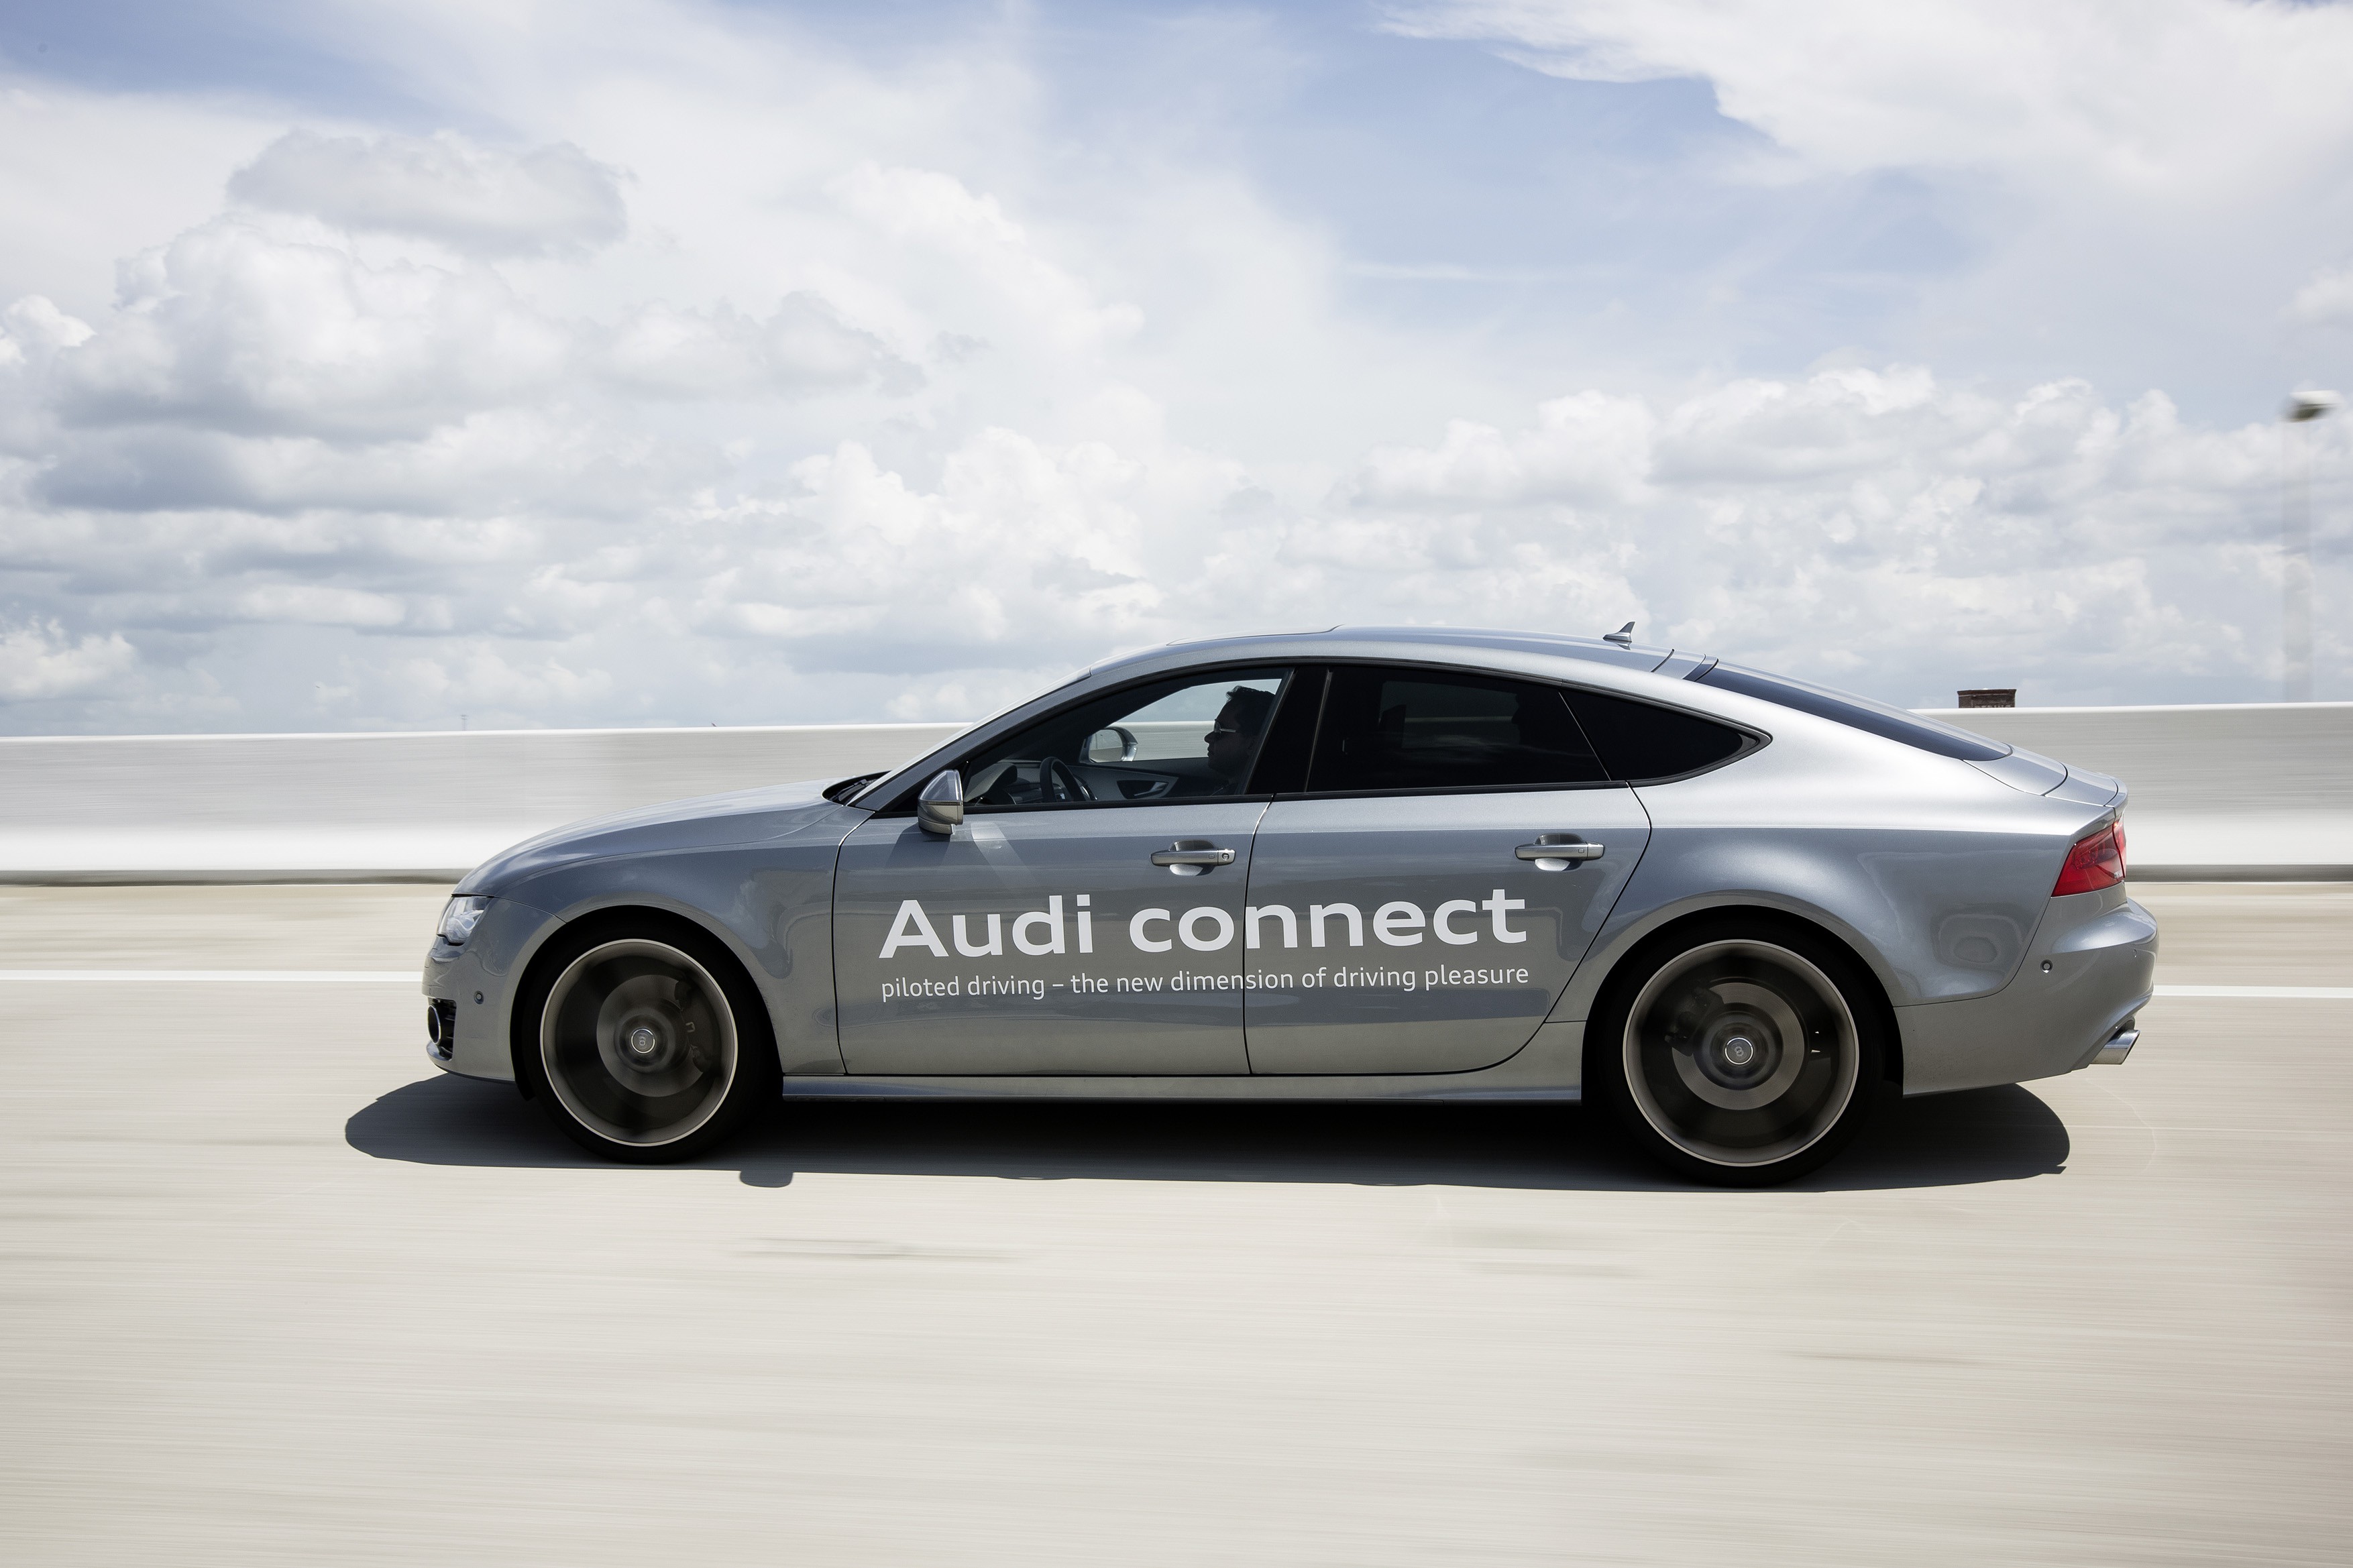 Audi comienza a probar su sistema de conducción pilotada